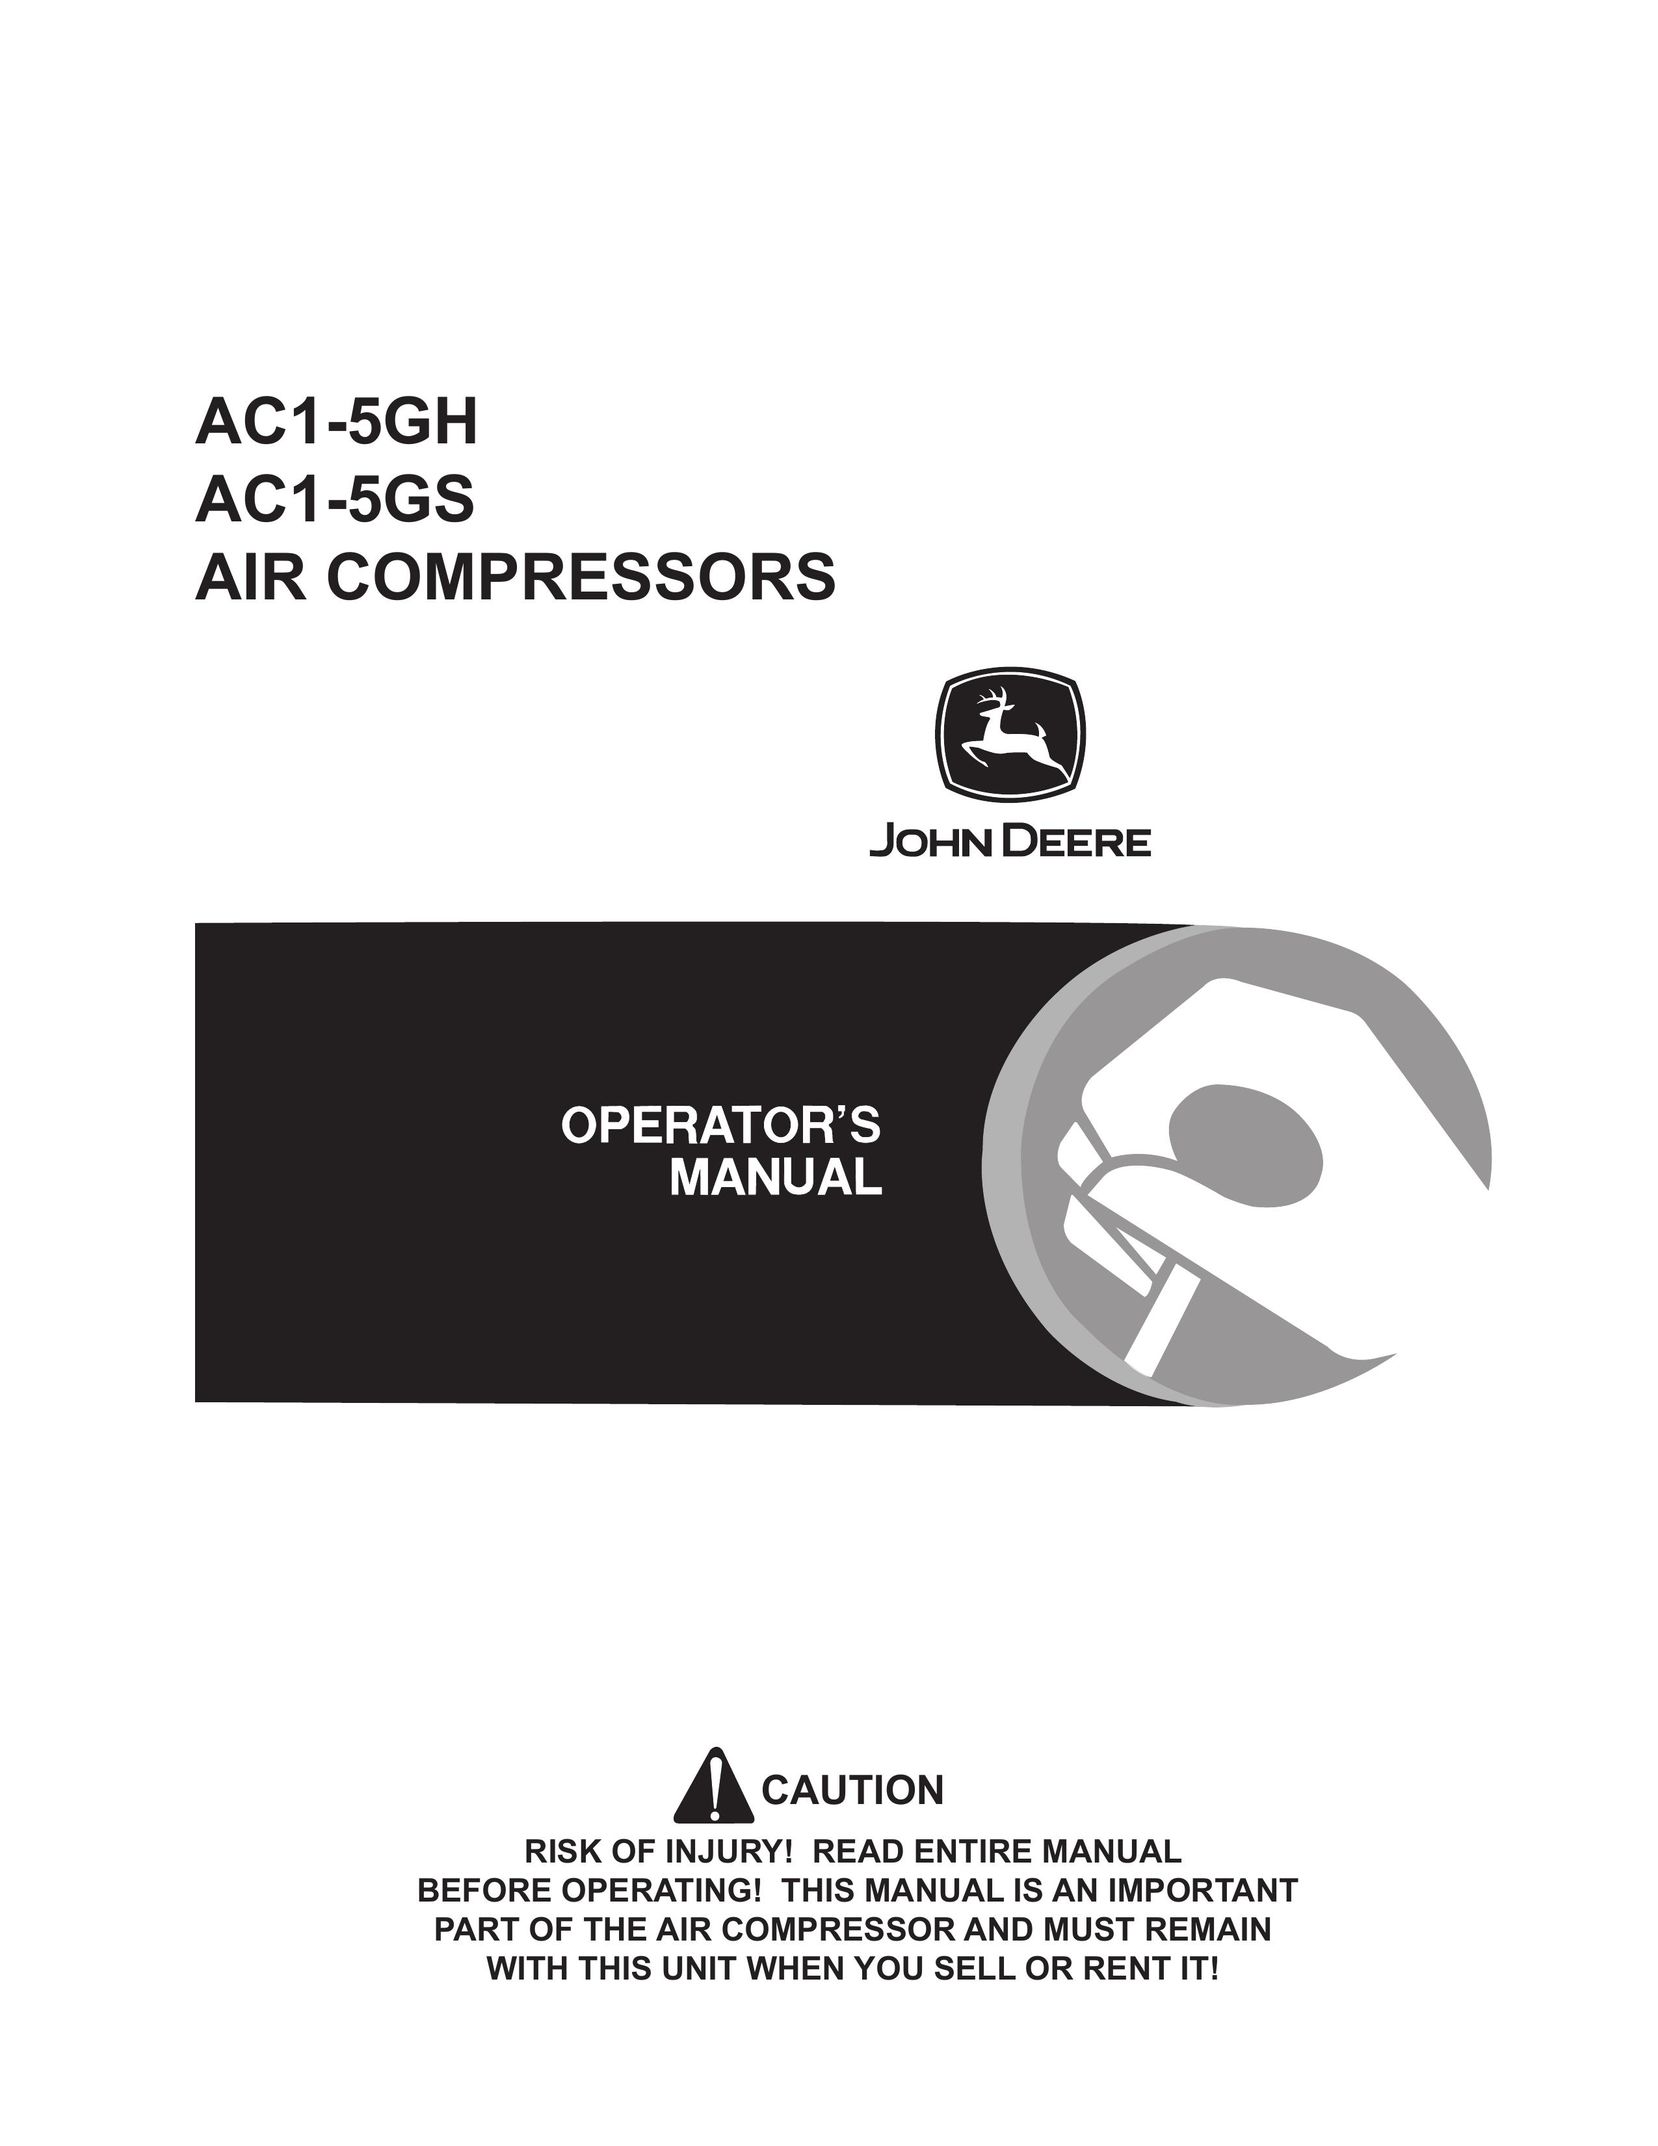 John Deere AC1-5GS Air Compressor User Manual